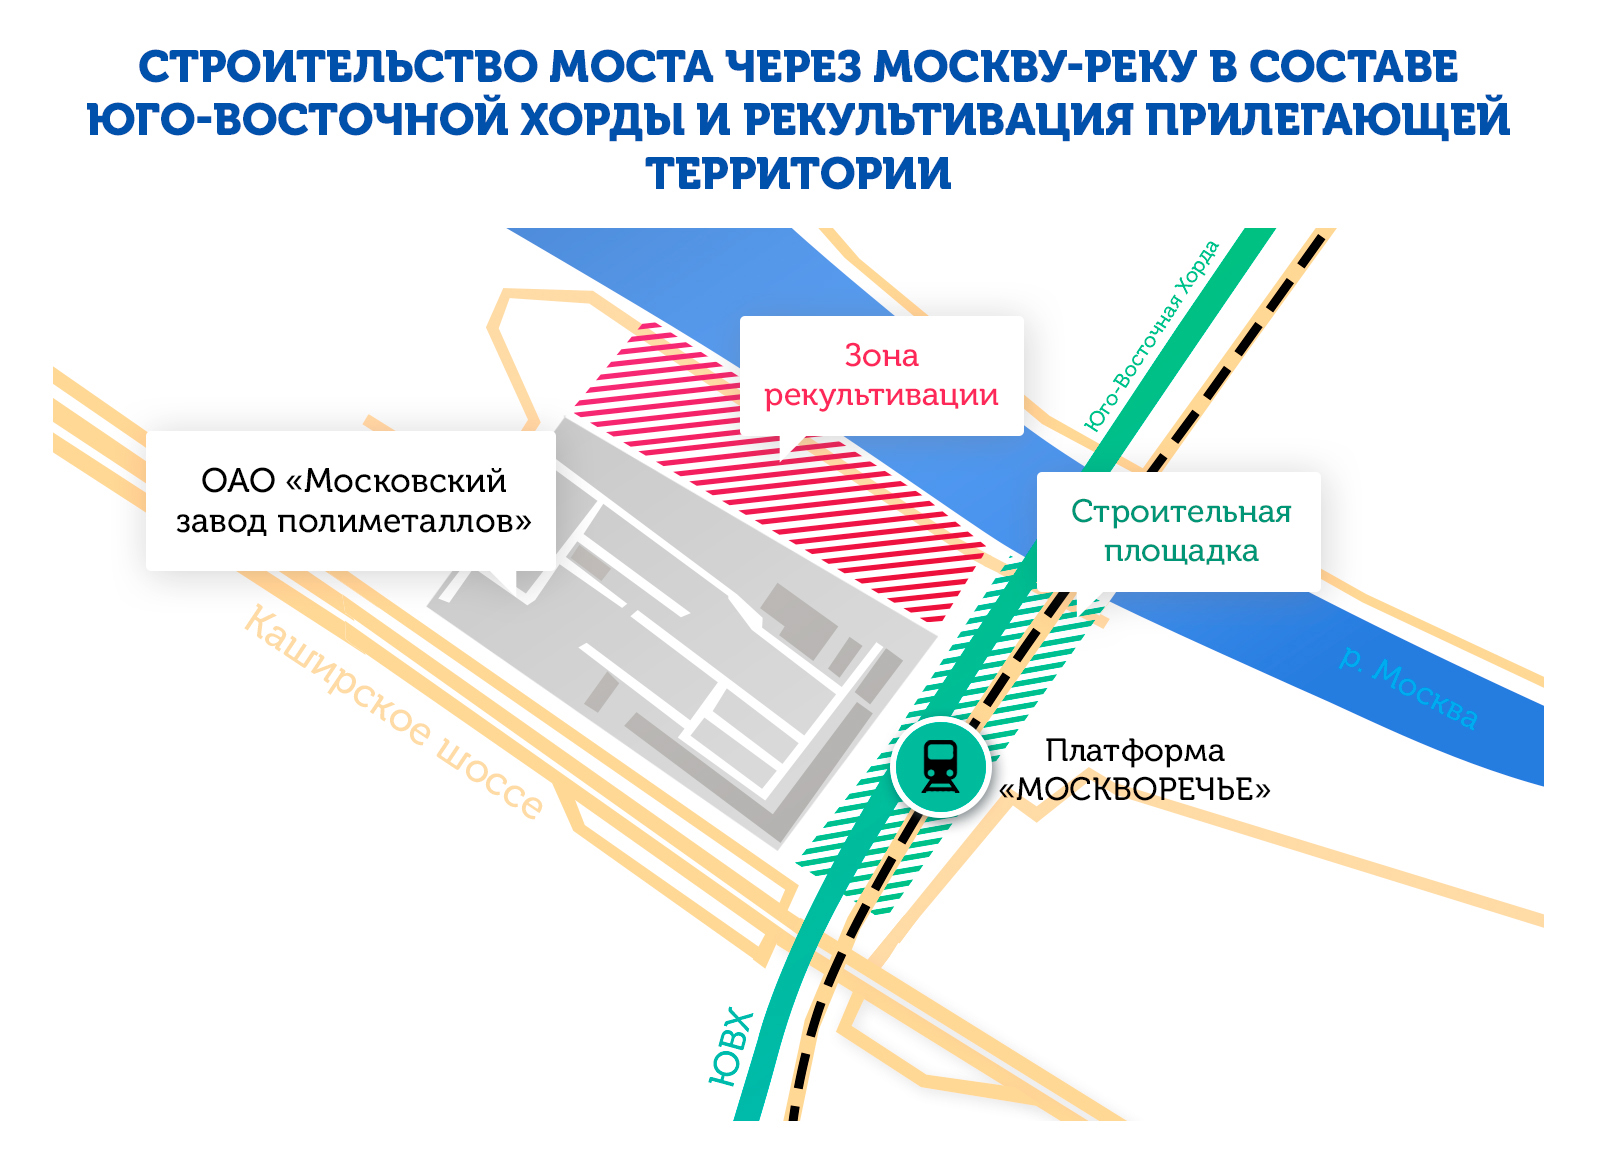 Власти Москвы выделили 80 млн рублей на вывоз радиоактивного грунта из зоны строительства ЮВХ